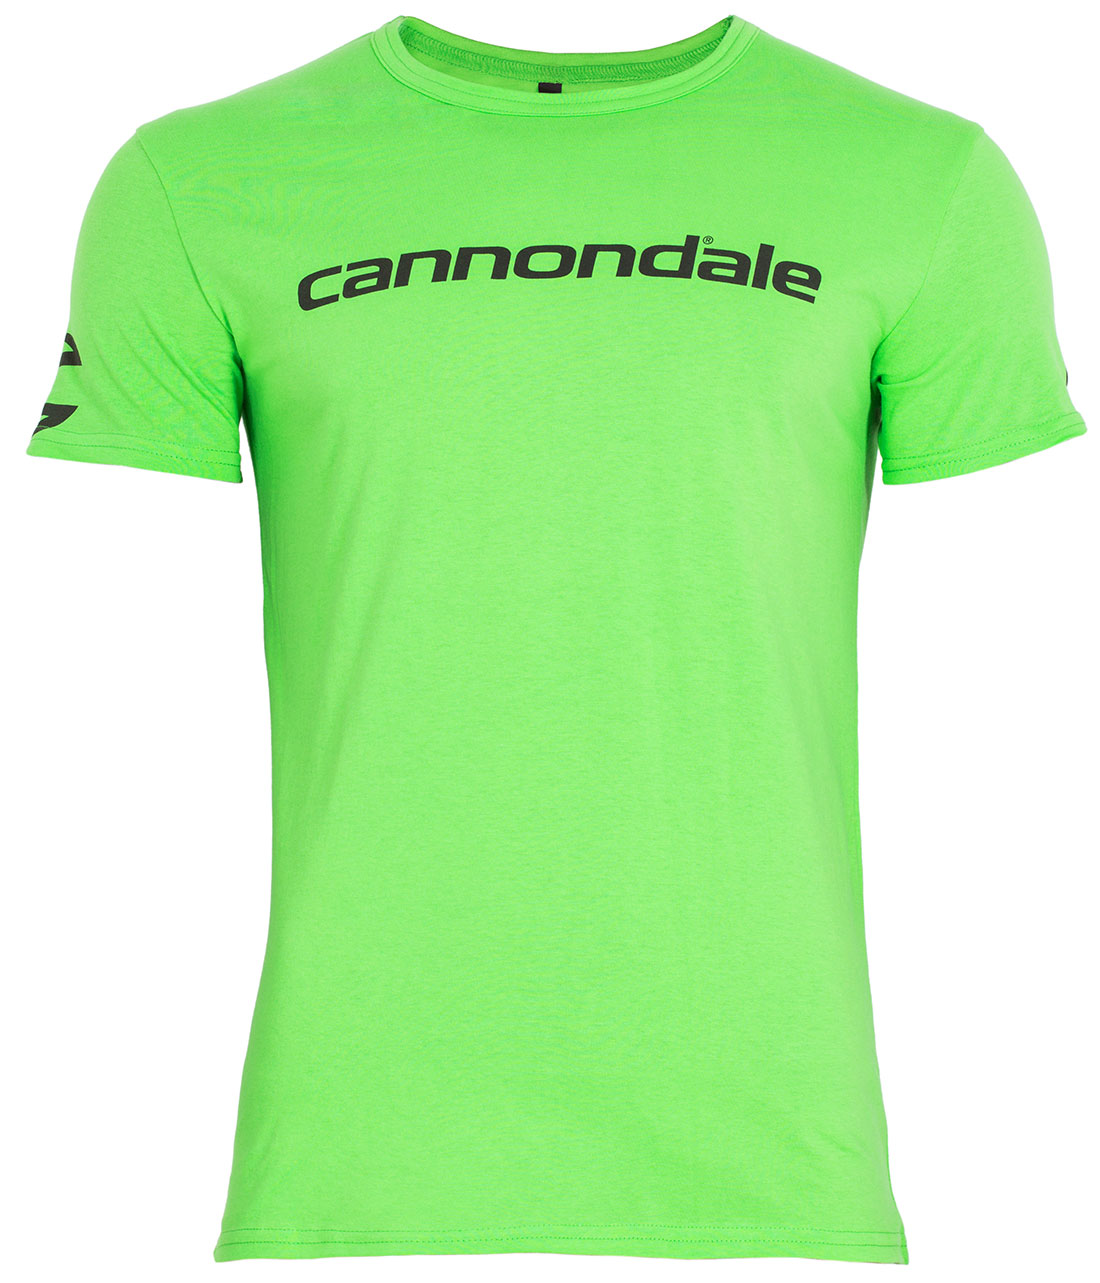 Футболка Cannondale с черным горизонтальным логотипом, зелёная, размер L